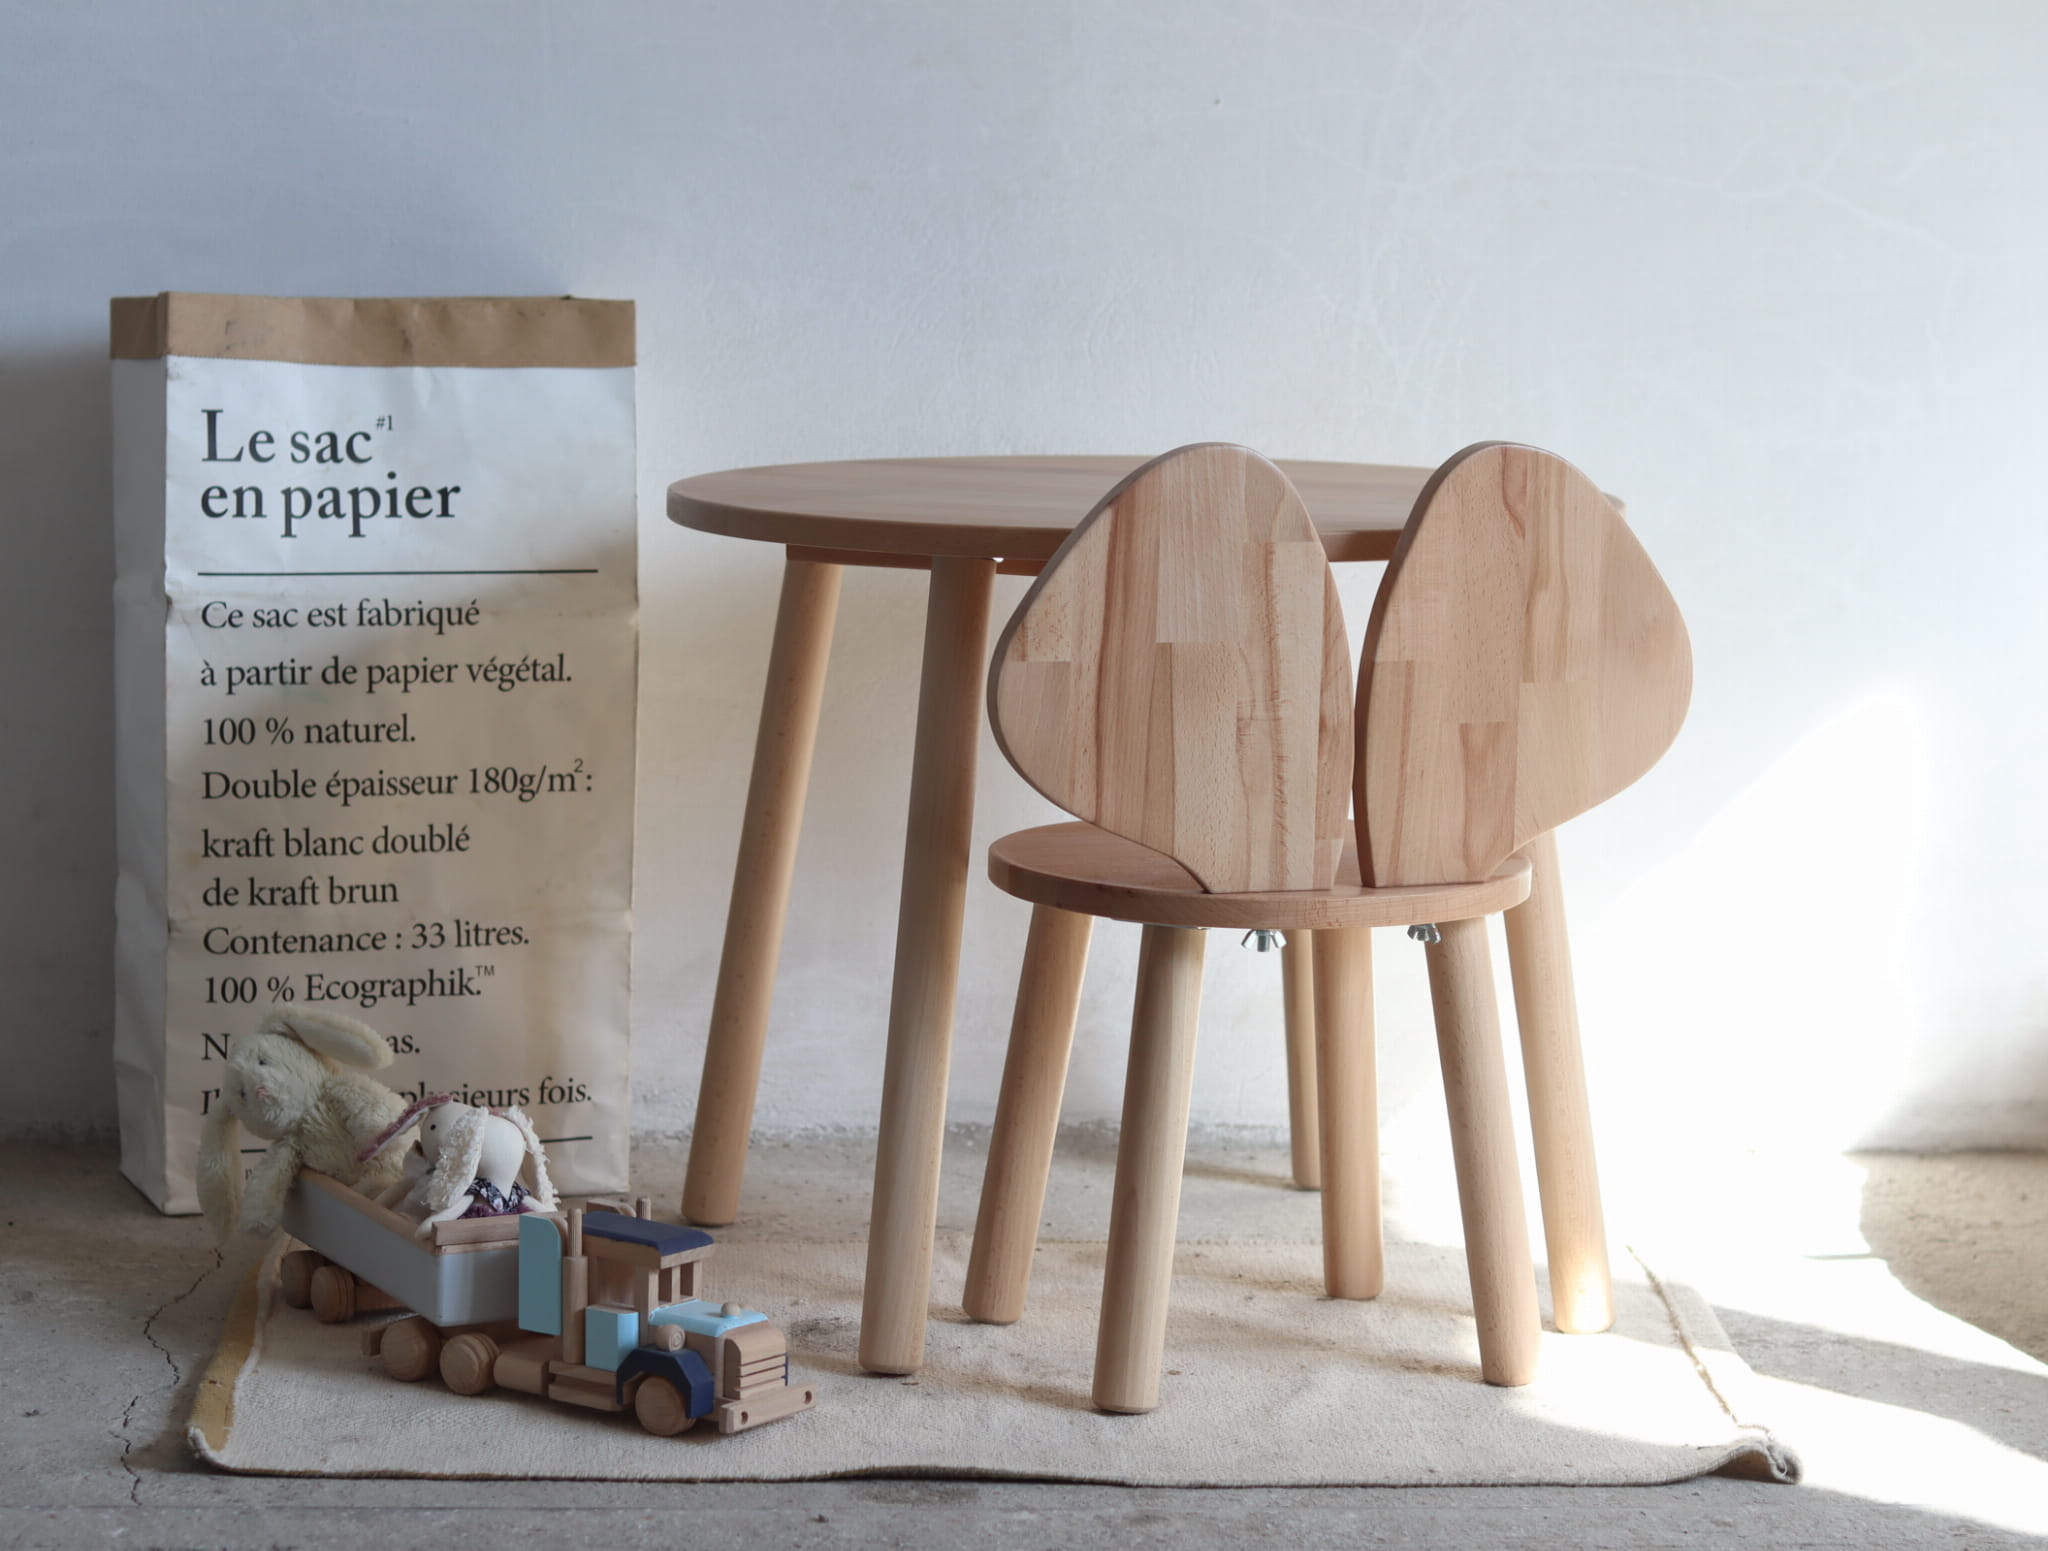 Okrągły drewniany stolik dla dzieci wykonany z drewna+ krzesełko z oparciem w kształcie uszu myszy.